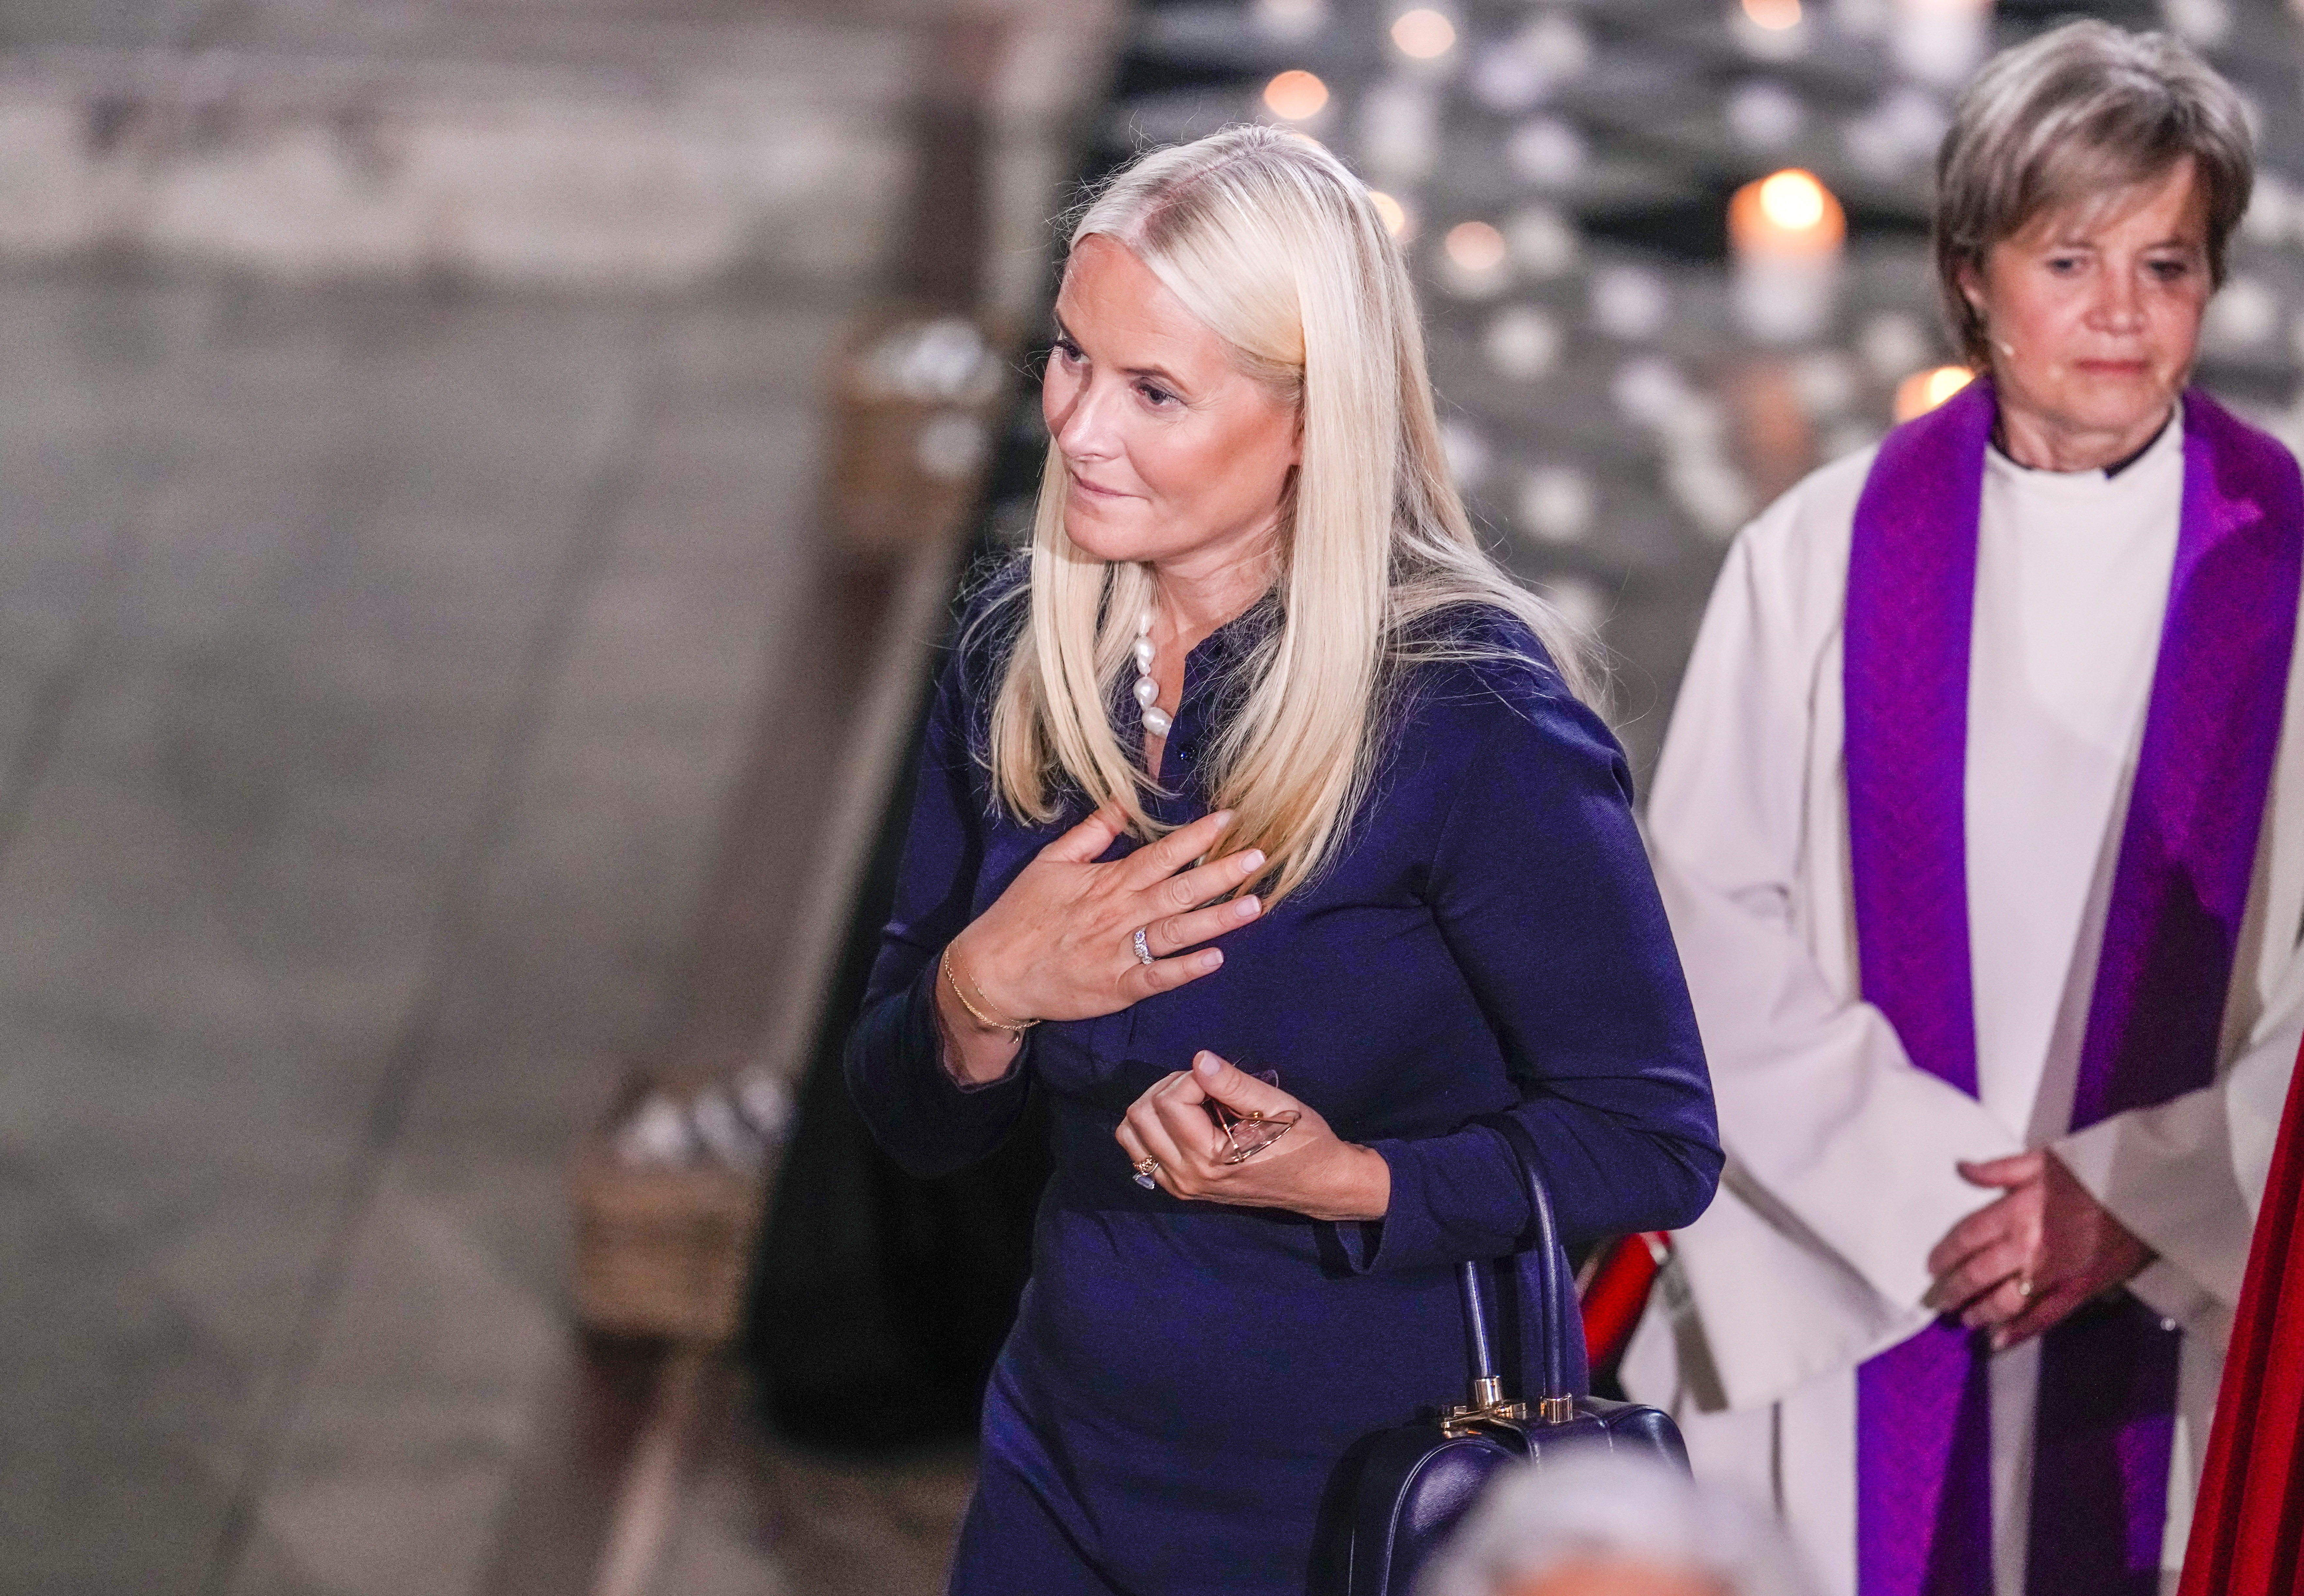 Norway's Crown Princess Mette-Marit